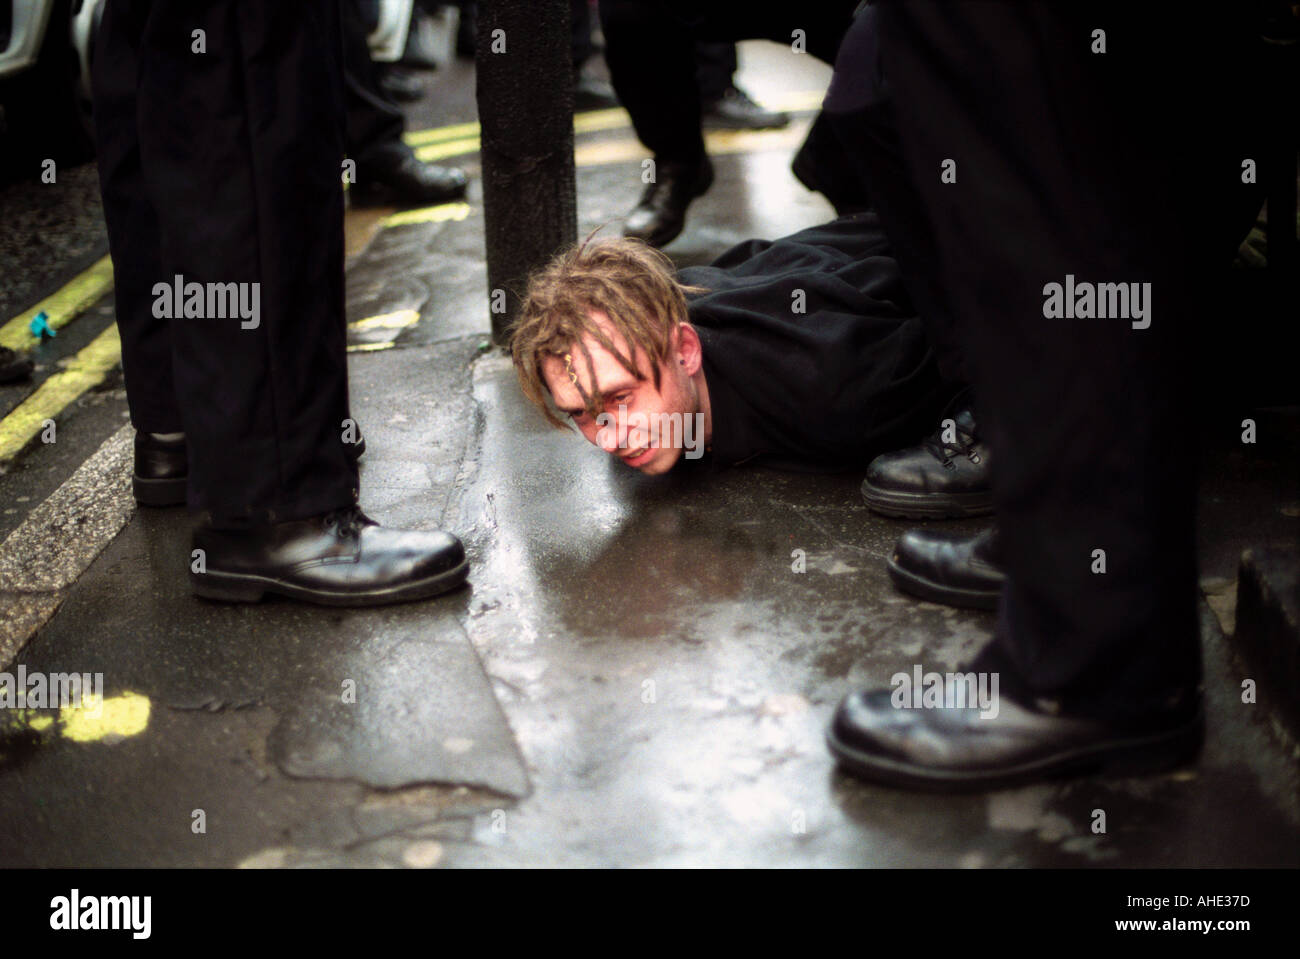 Les jeunes manifestant renversé par la police menotté et maintenu au sol par la police lors des manifestations de détresse au centre de Londres. Banque D'Images